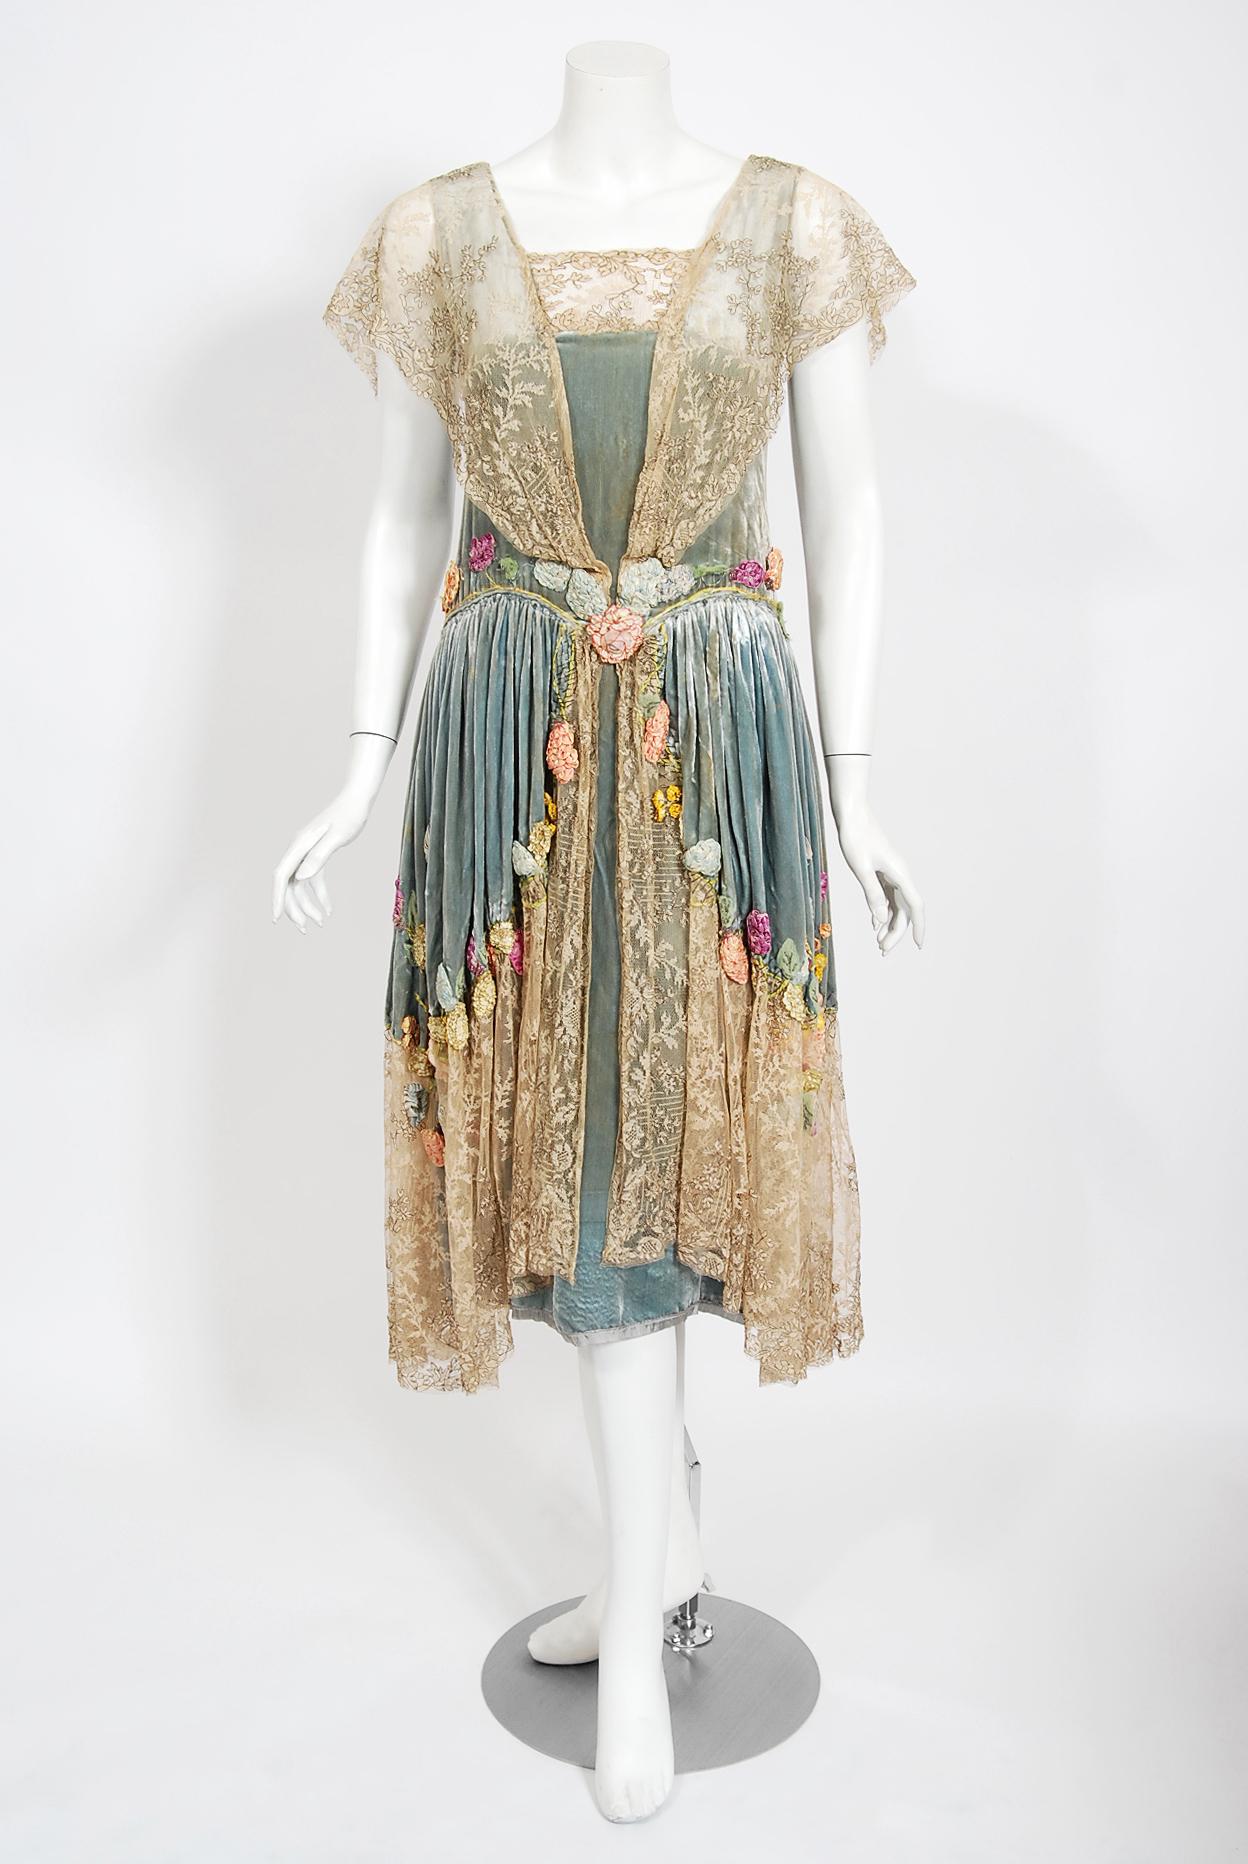 Ein prächtiges und unglaublich seltenes Kleid aus Samt und Spitze von Sadie Nemser Couture aus dem Jahr 1924. Dieses Kleidungsstück hat mir sofort den Atem geraubt, als ich es sah. Es ist ein wahrhaft tragbares Meisterwerk. Frau Sadie Nemser